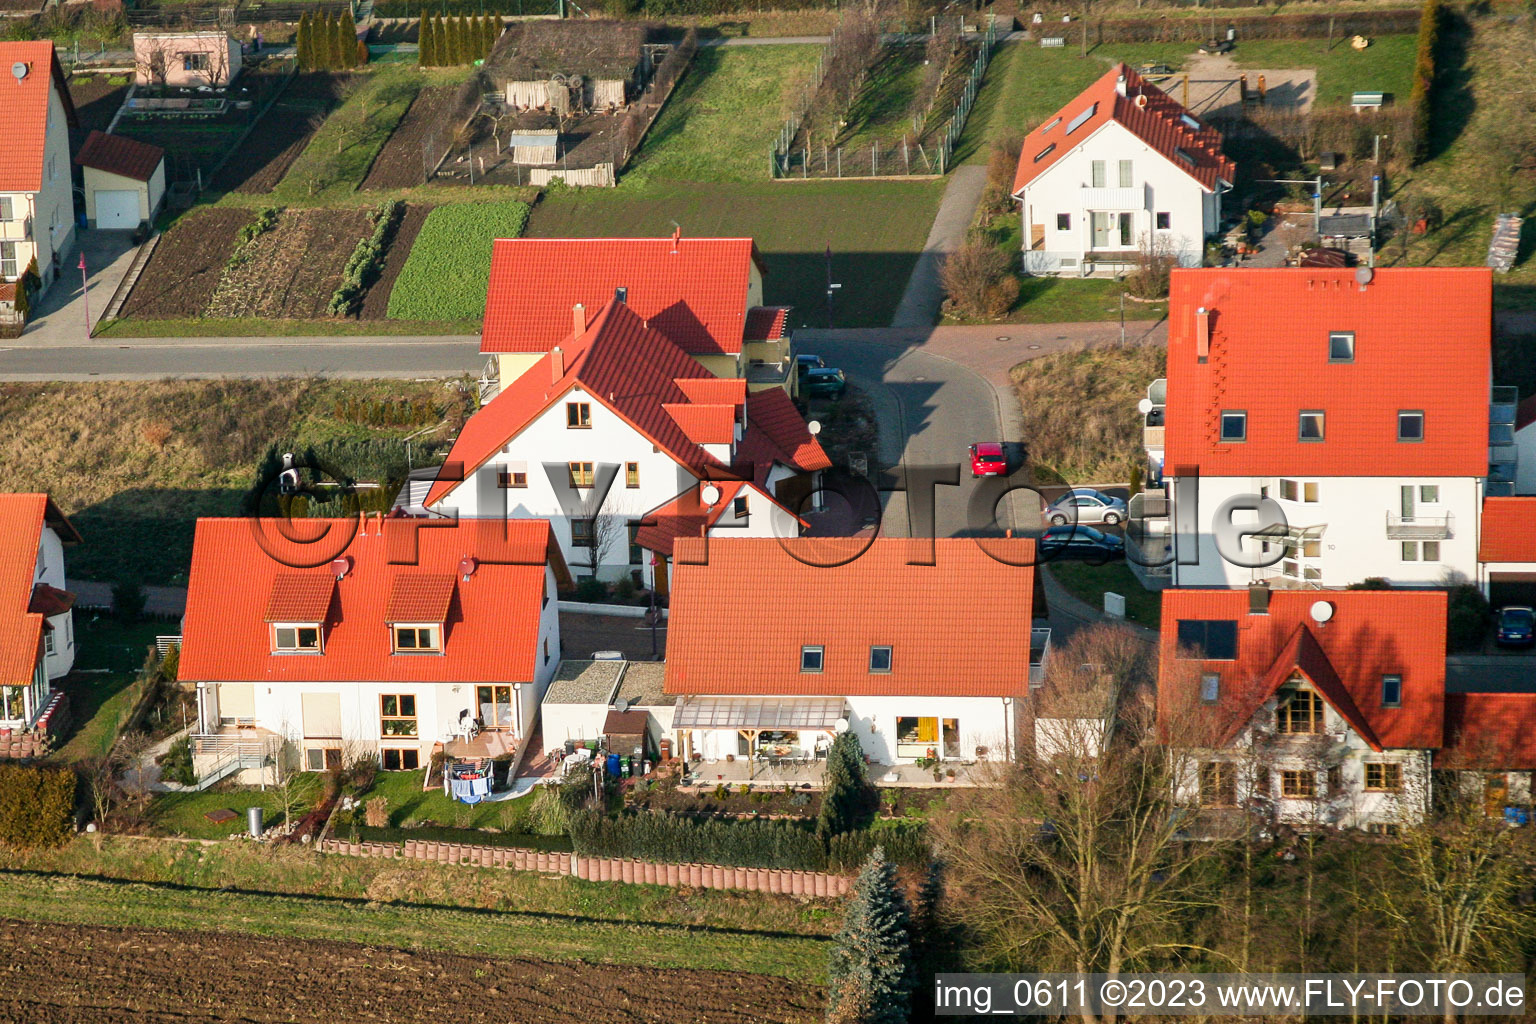 Vue aérienne de Lièvre attrapant à Freckenfeld dans le département Rhénanie-Palatinat, Allemagne